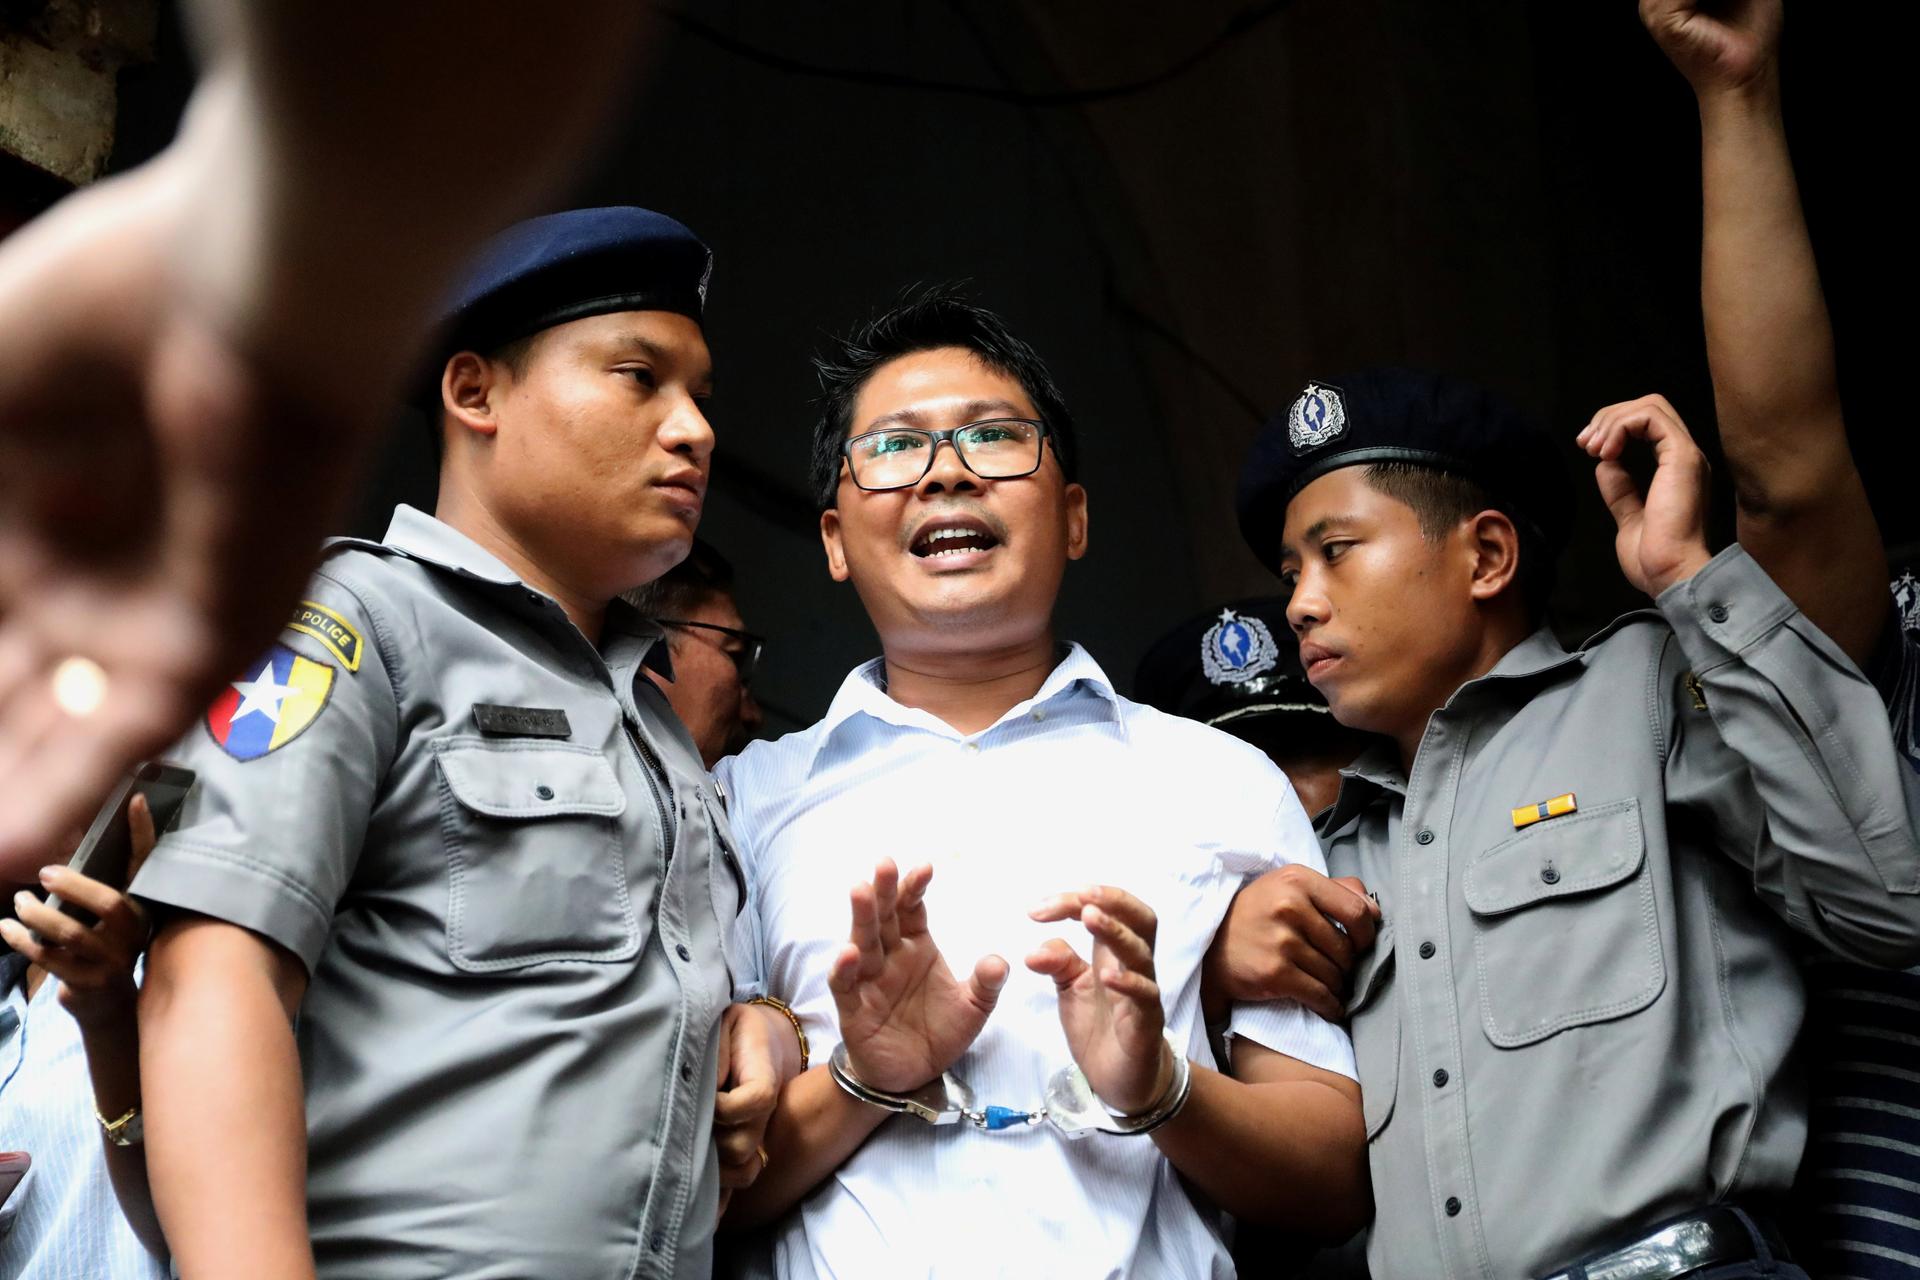 Reuters journalist Wa Lone departs Insein court